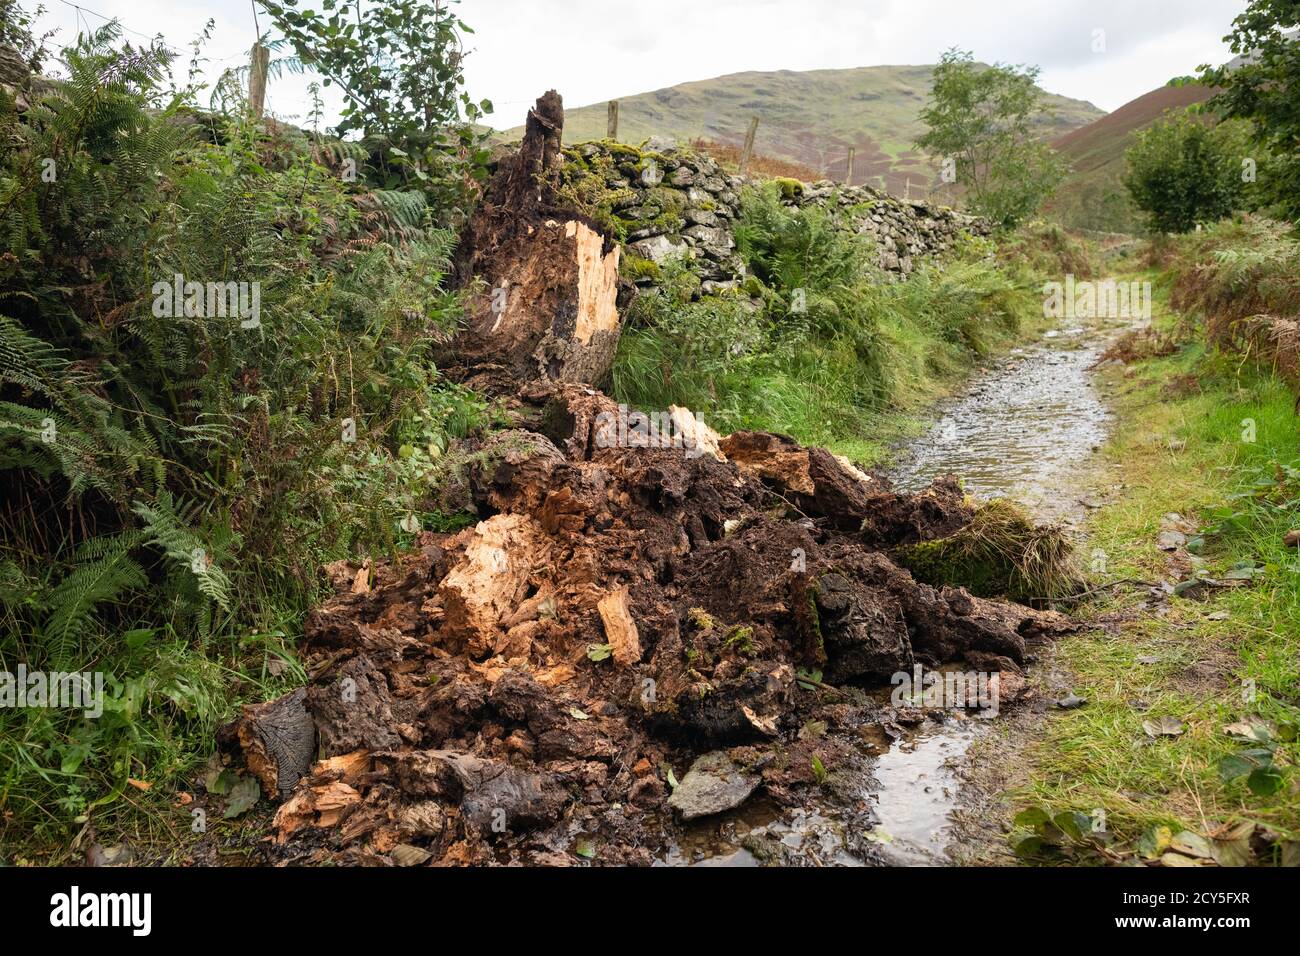 Albero decadente o snag - albero marcio crollato sul sentiero - Lake District, UK Foto Stock